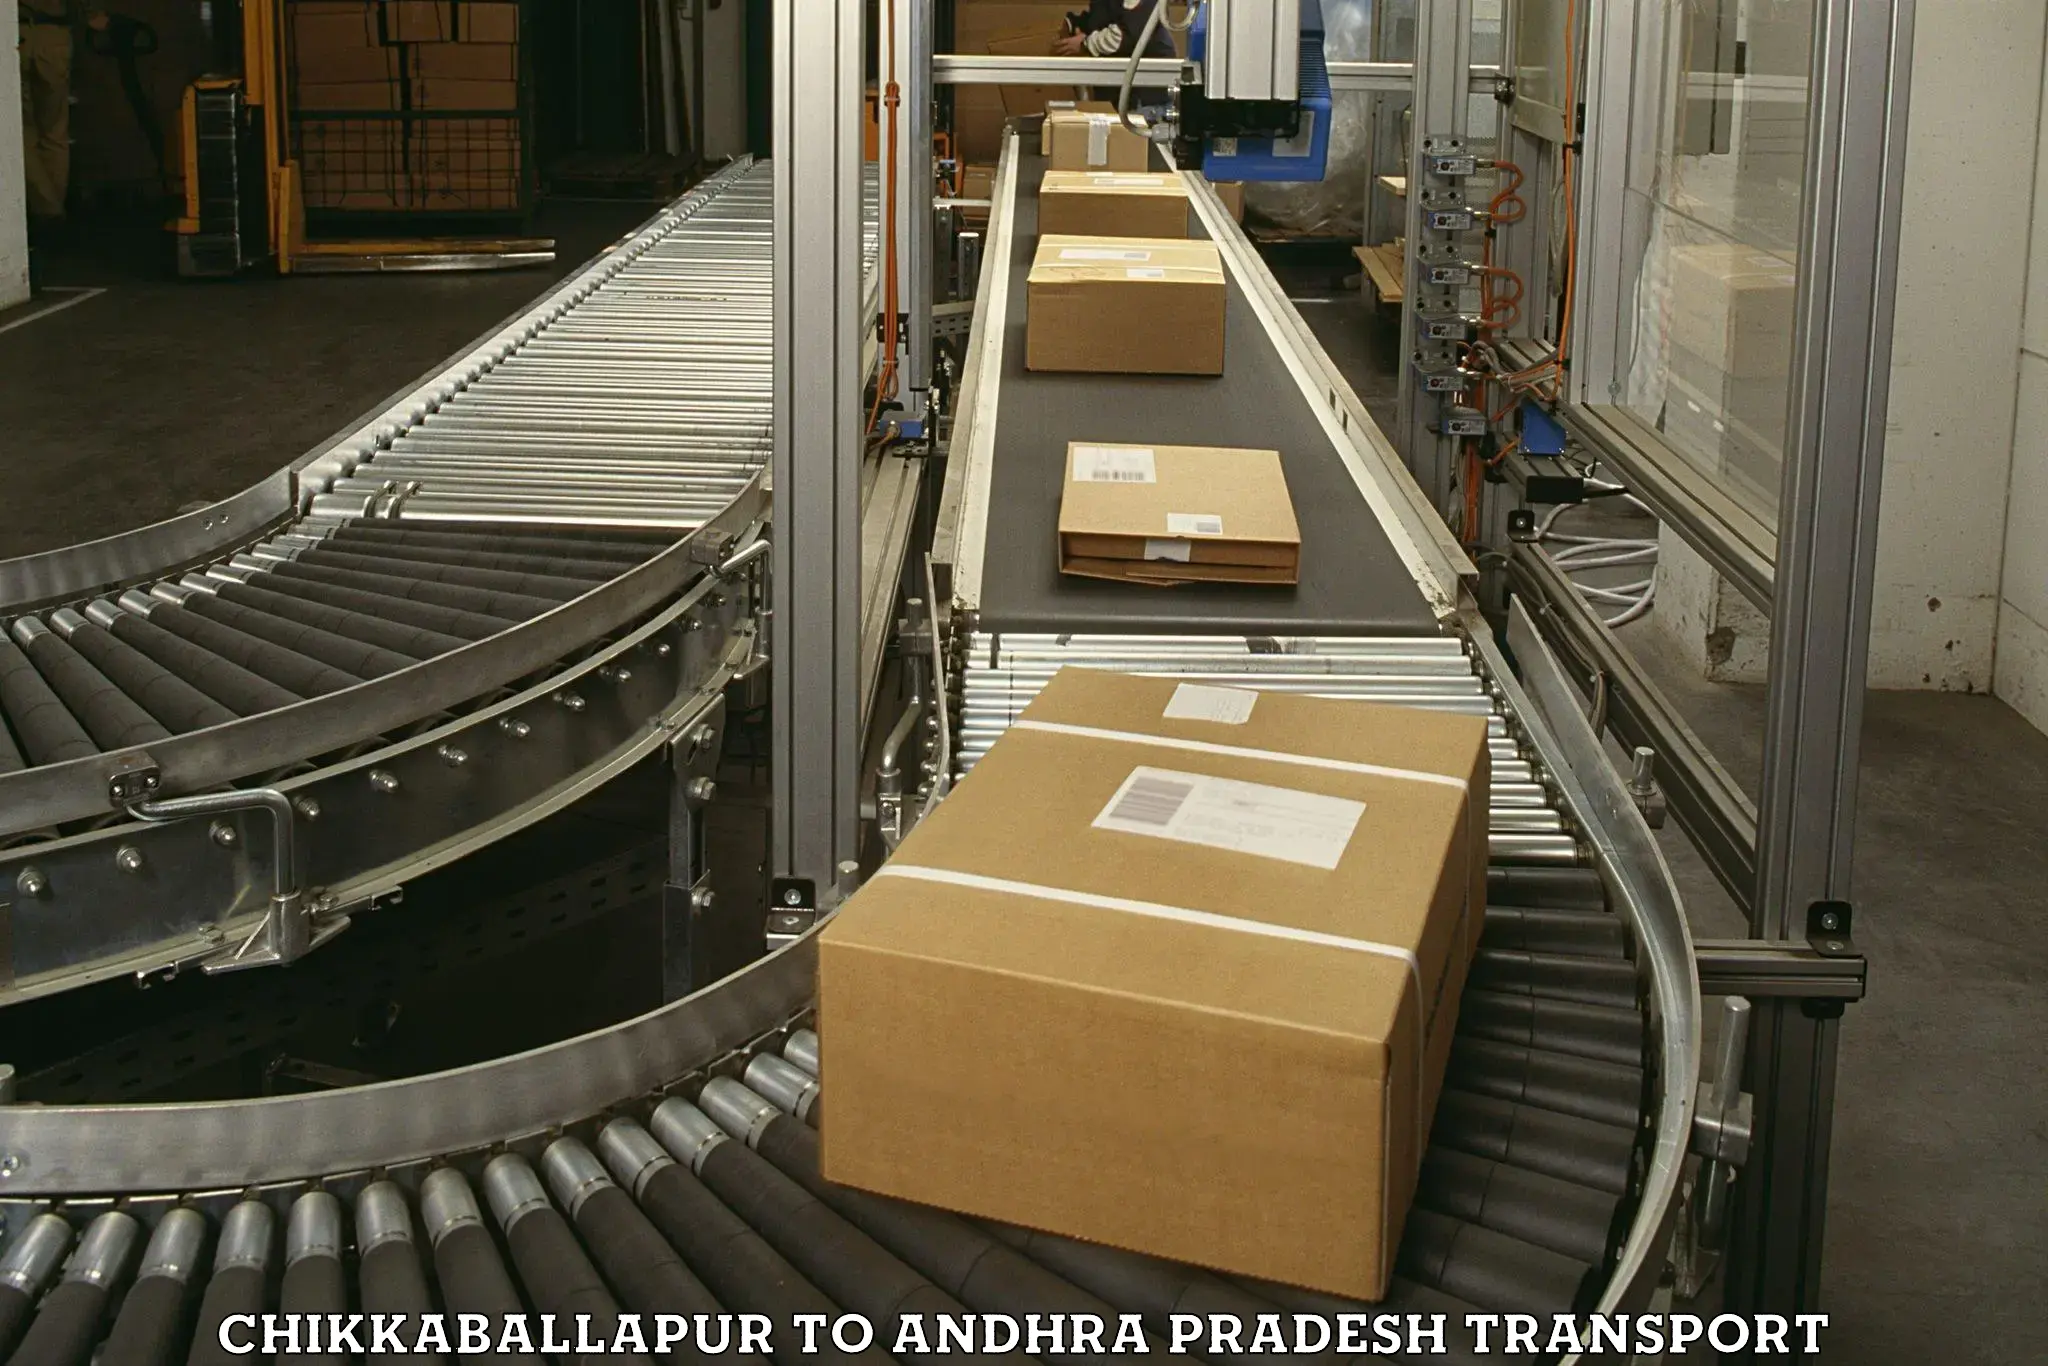 Commercial transport service Chikkaballapur to Venkatagiri